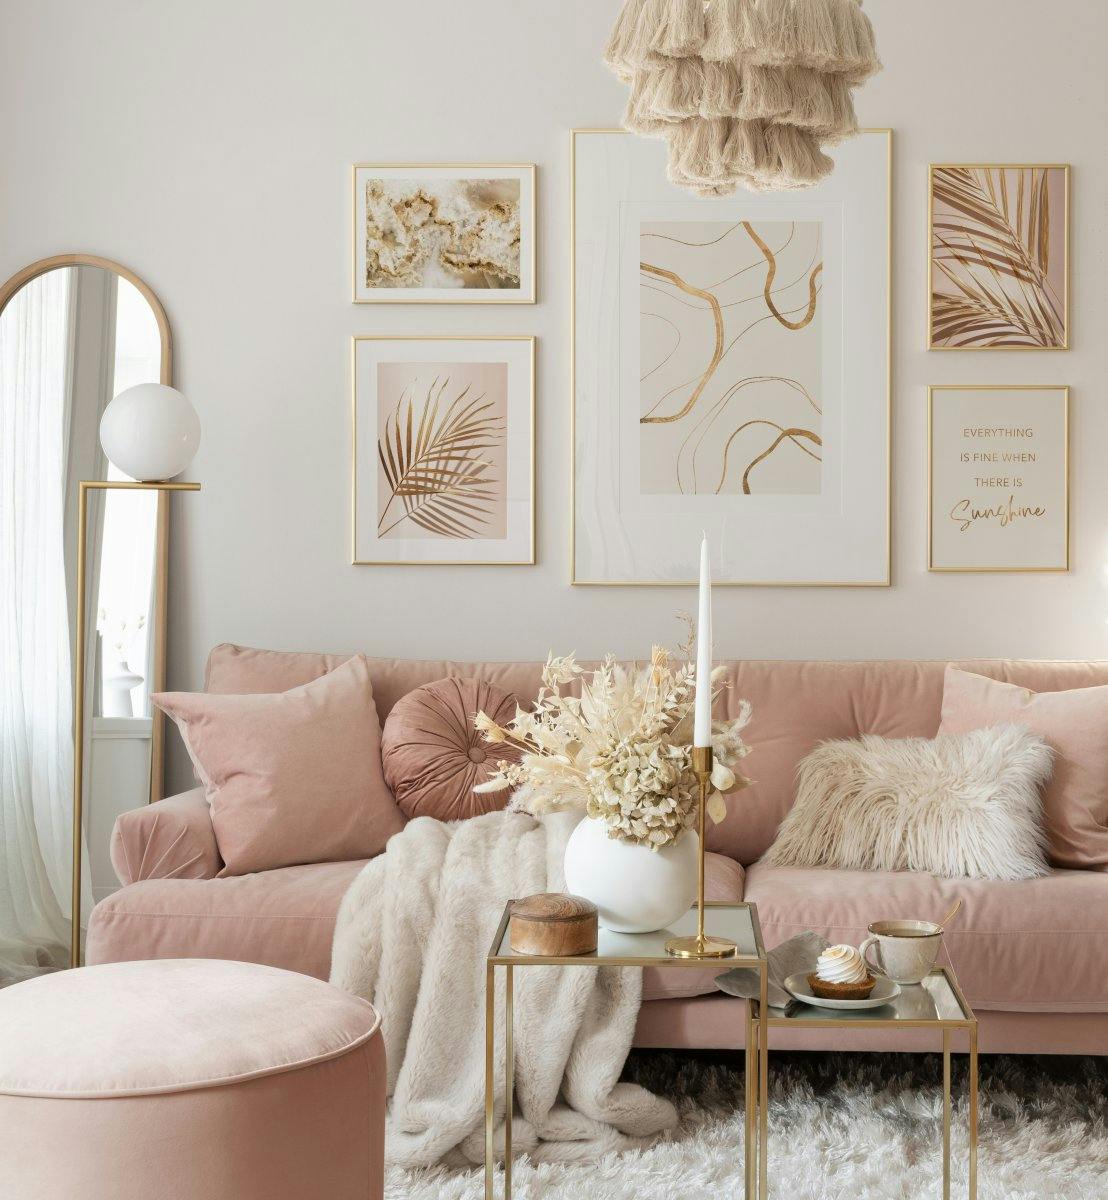 Illustrazioni e fotografie serene nei colori beige per il soggiorno